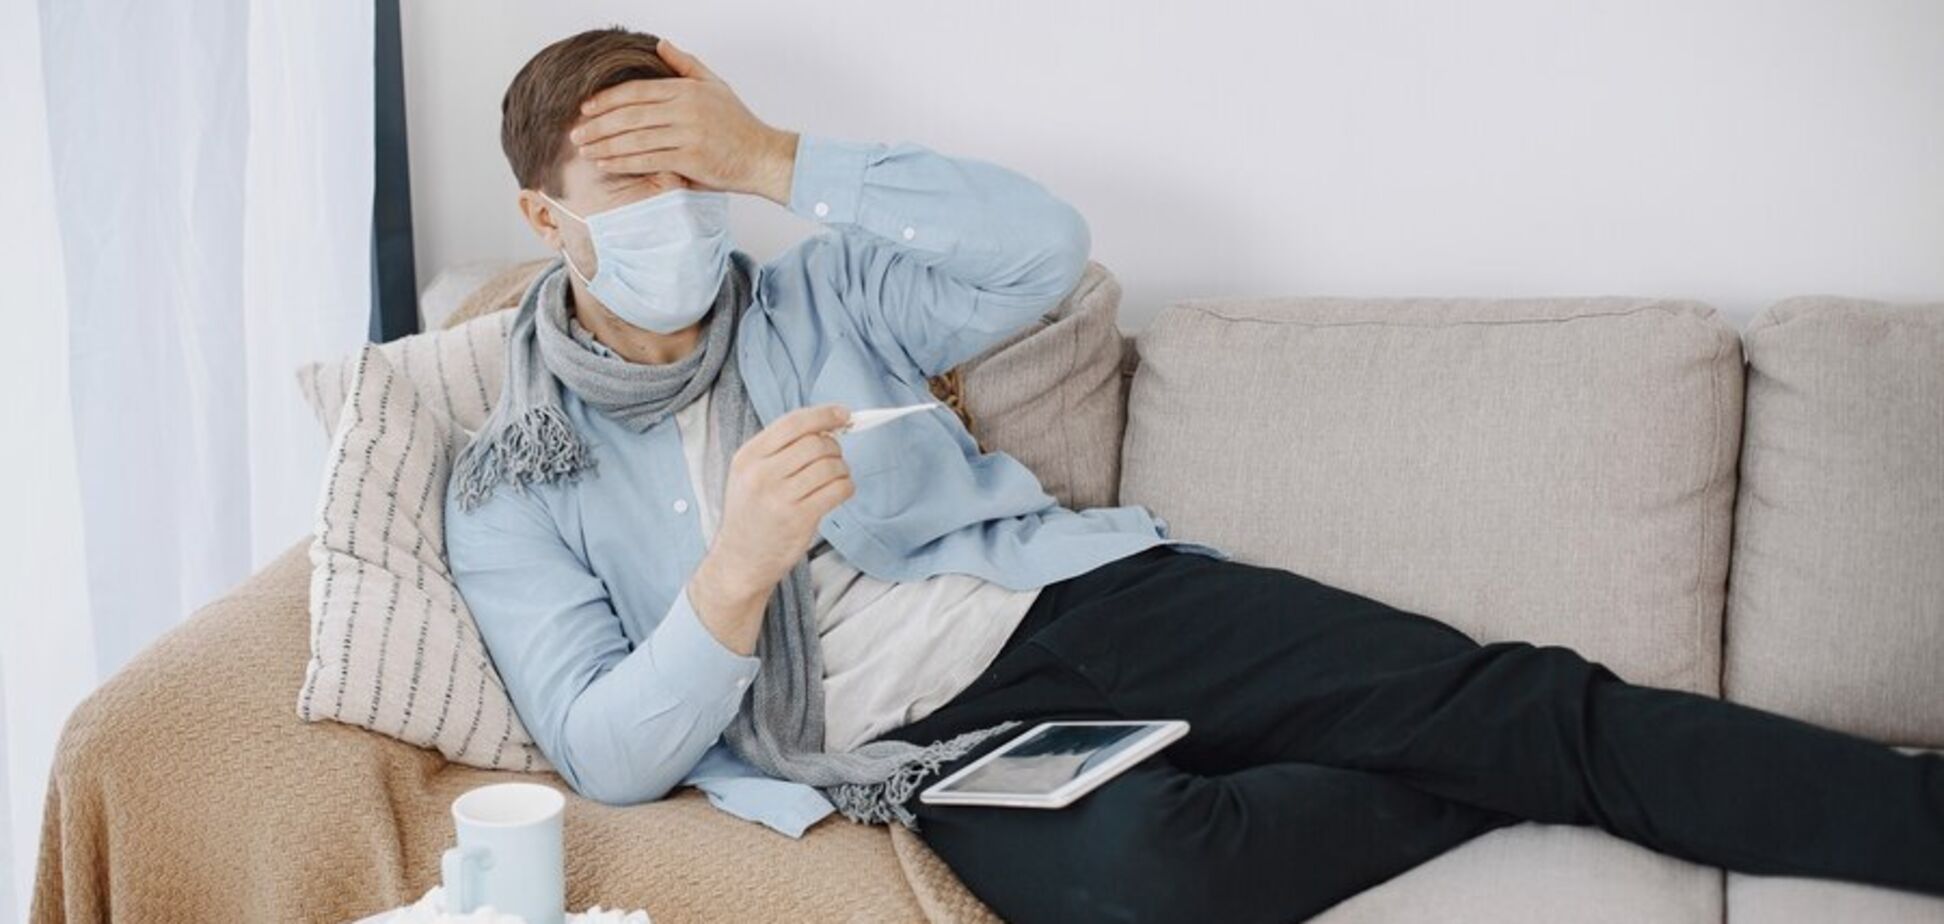 Ковид и грипп: когда ждать эпидемии в этом году